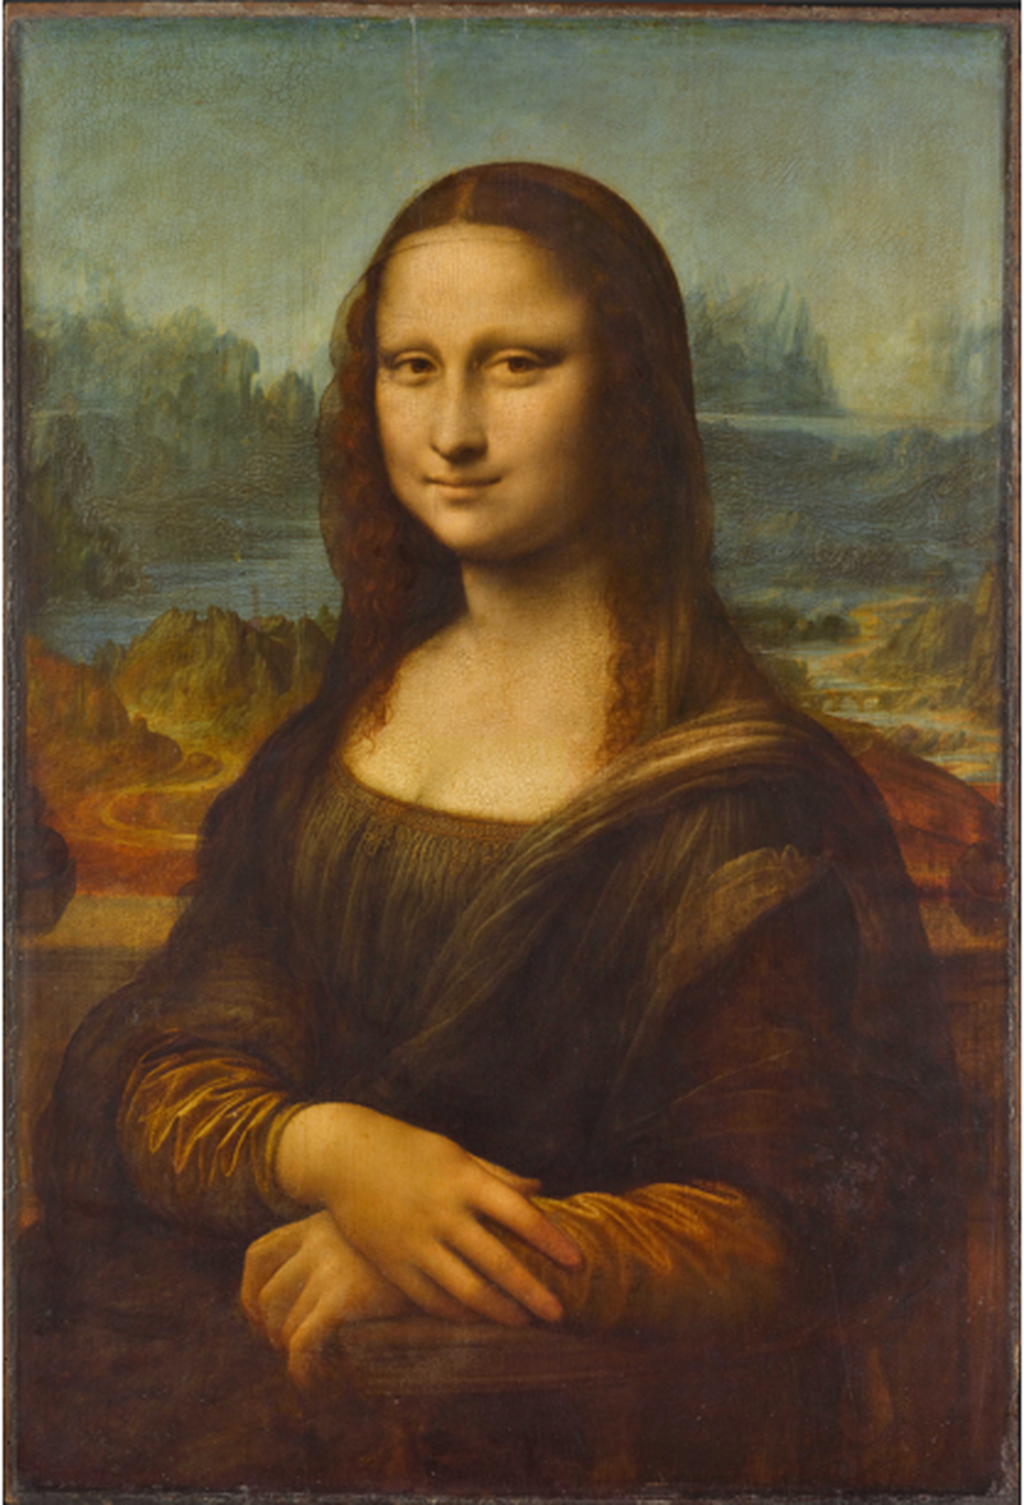 La Gioconda (Leonardo Da Vinci, 1503).